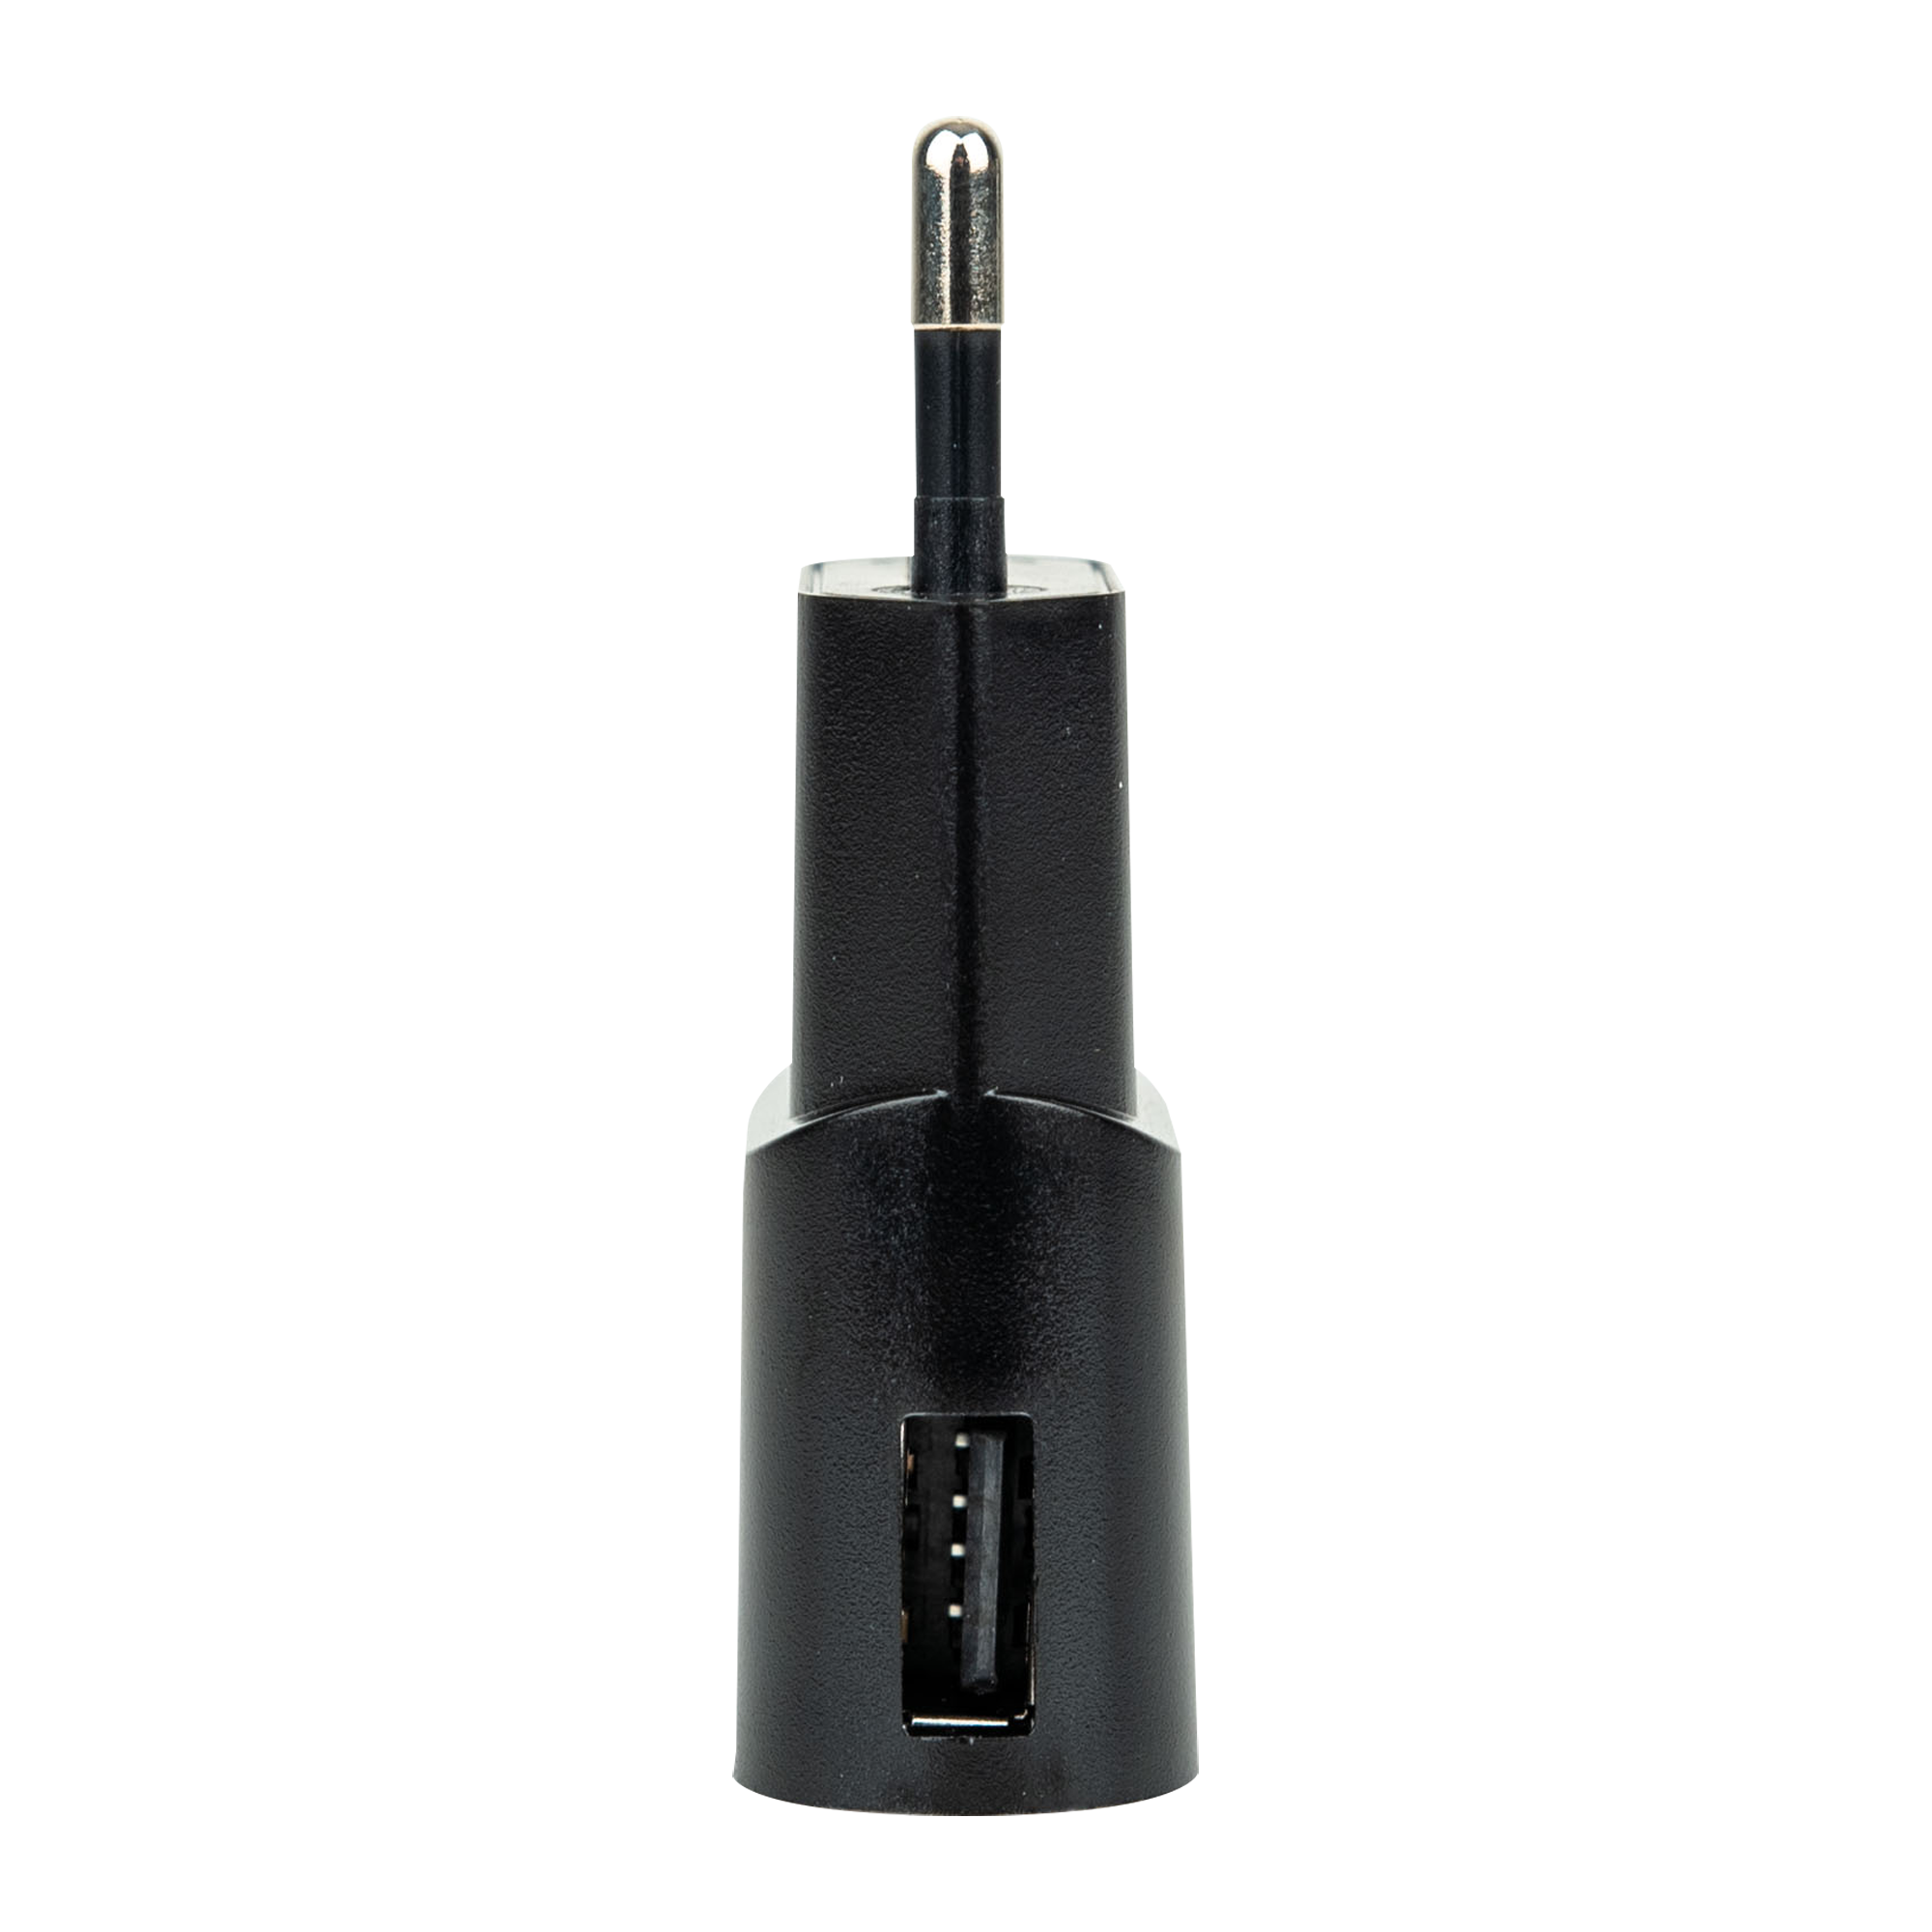 Showgear USB Power Supply 1000 mA 